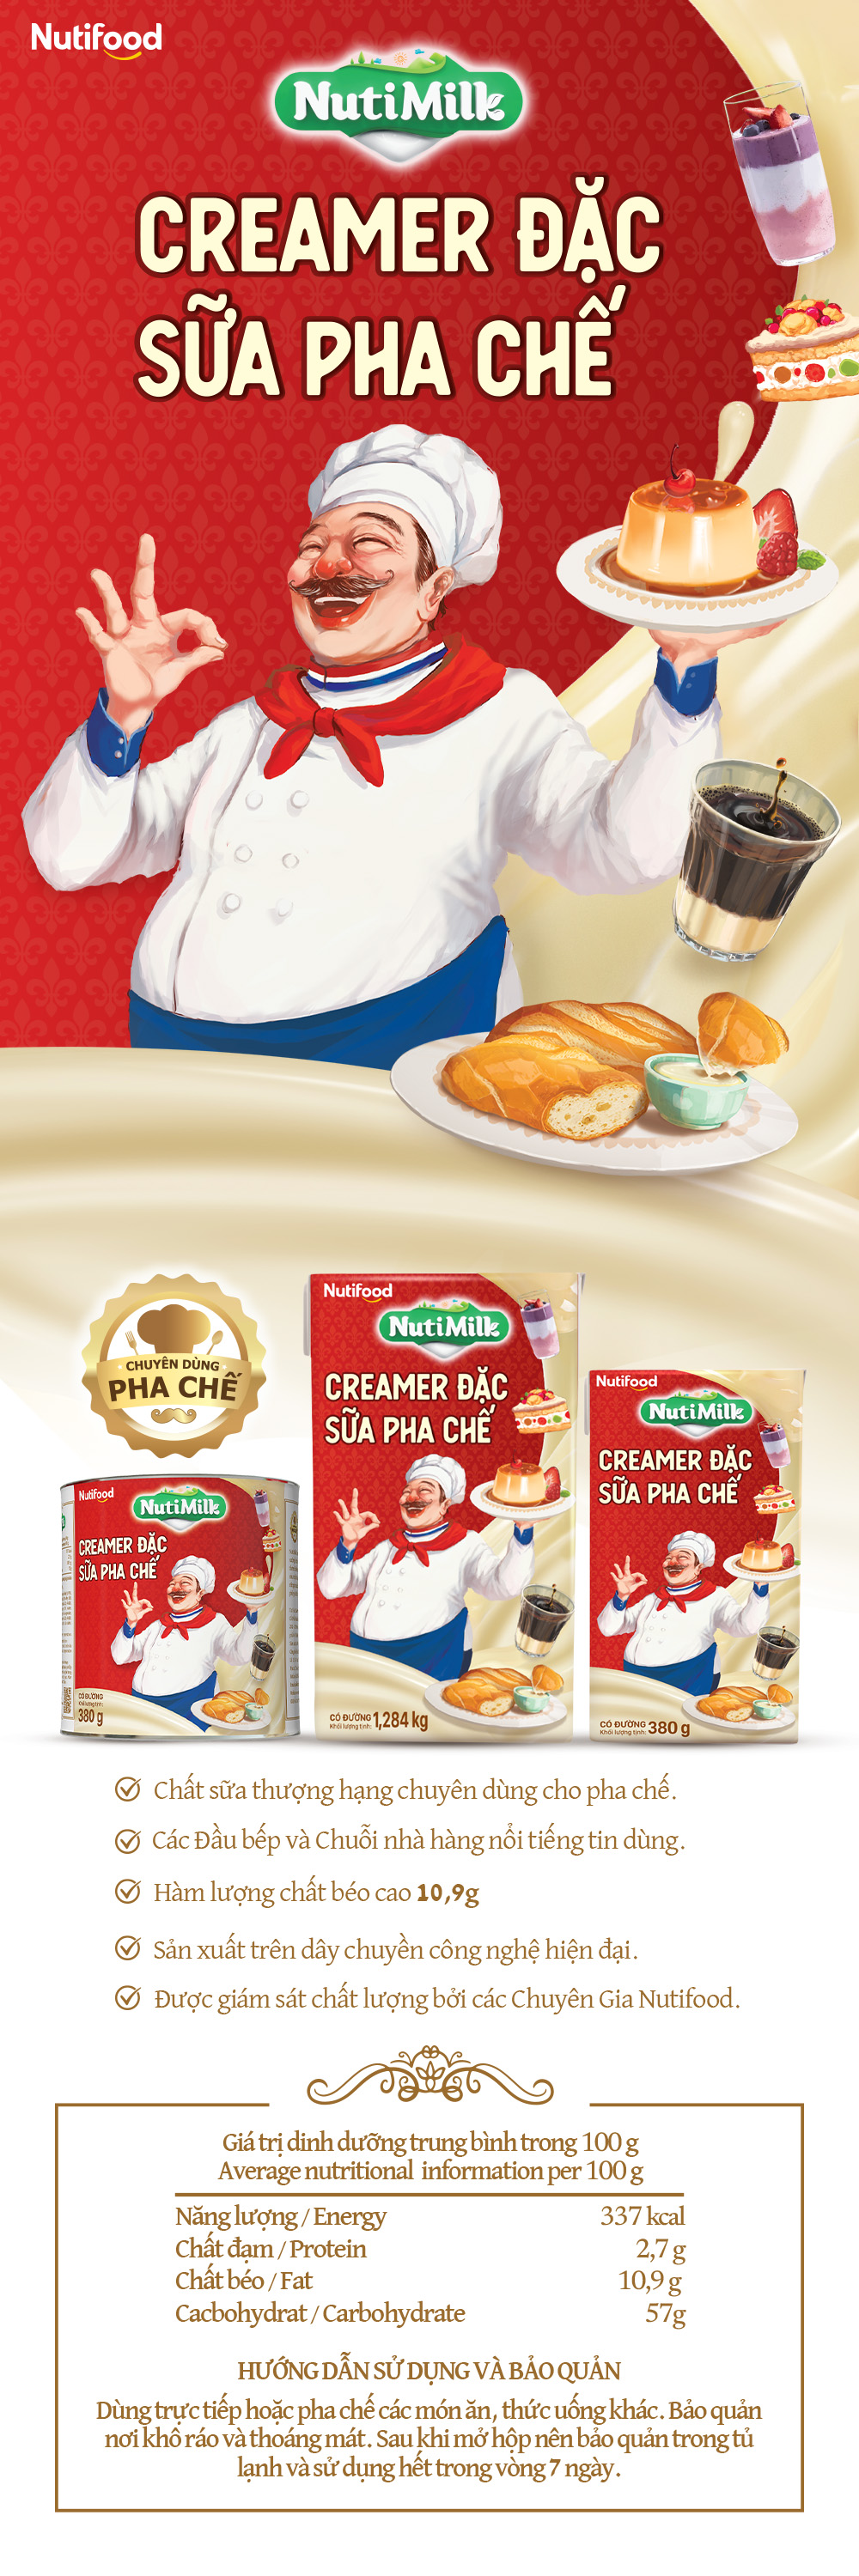 creamer đặc sữa pha chế có đường nuti hộp 1284g sd02 - thương hiệu nutifood 1